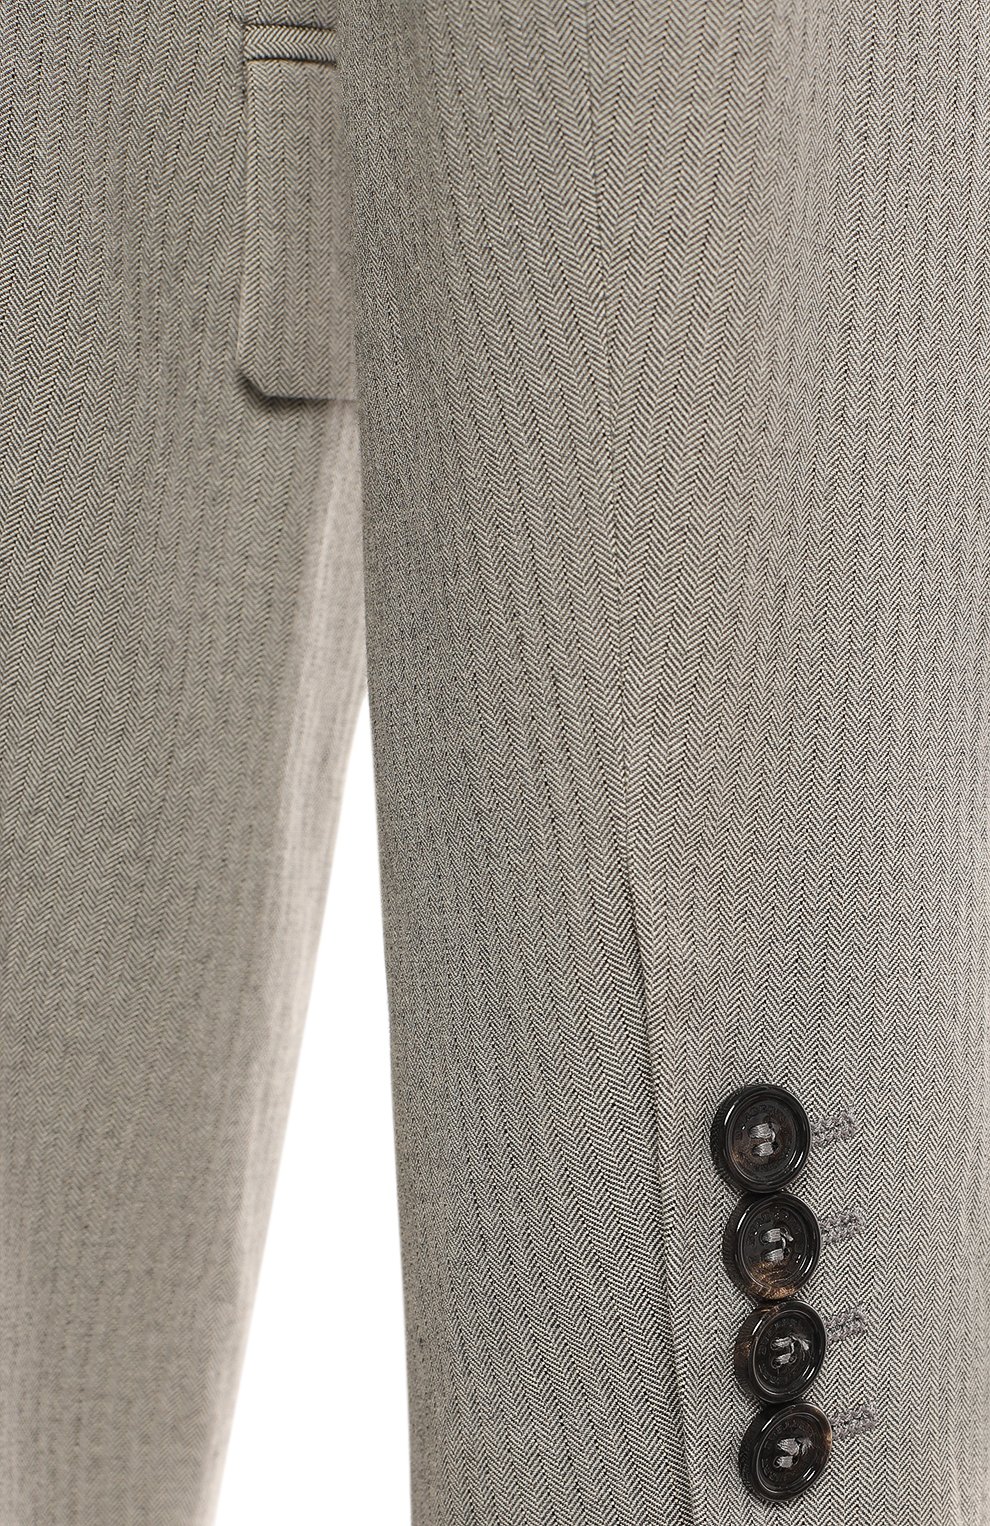 Пиджак из шерсти и хлопка | Burberry | Серый - 4